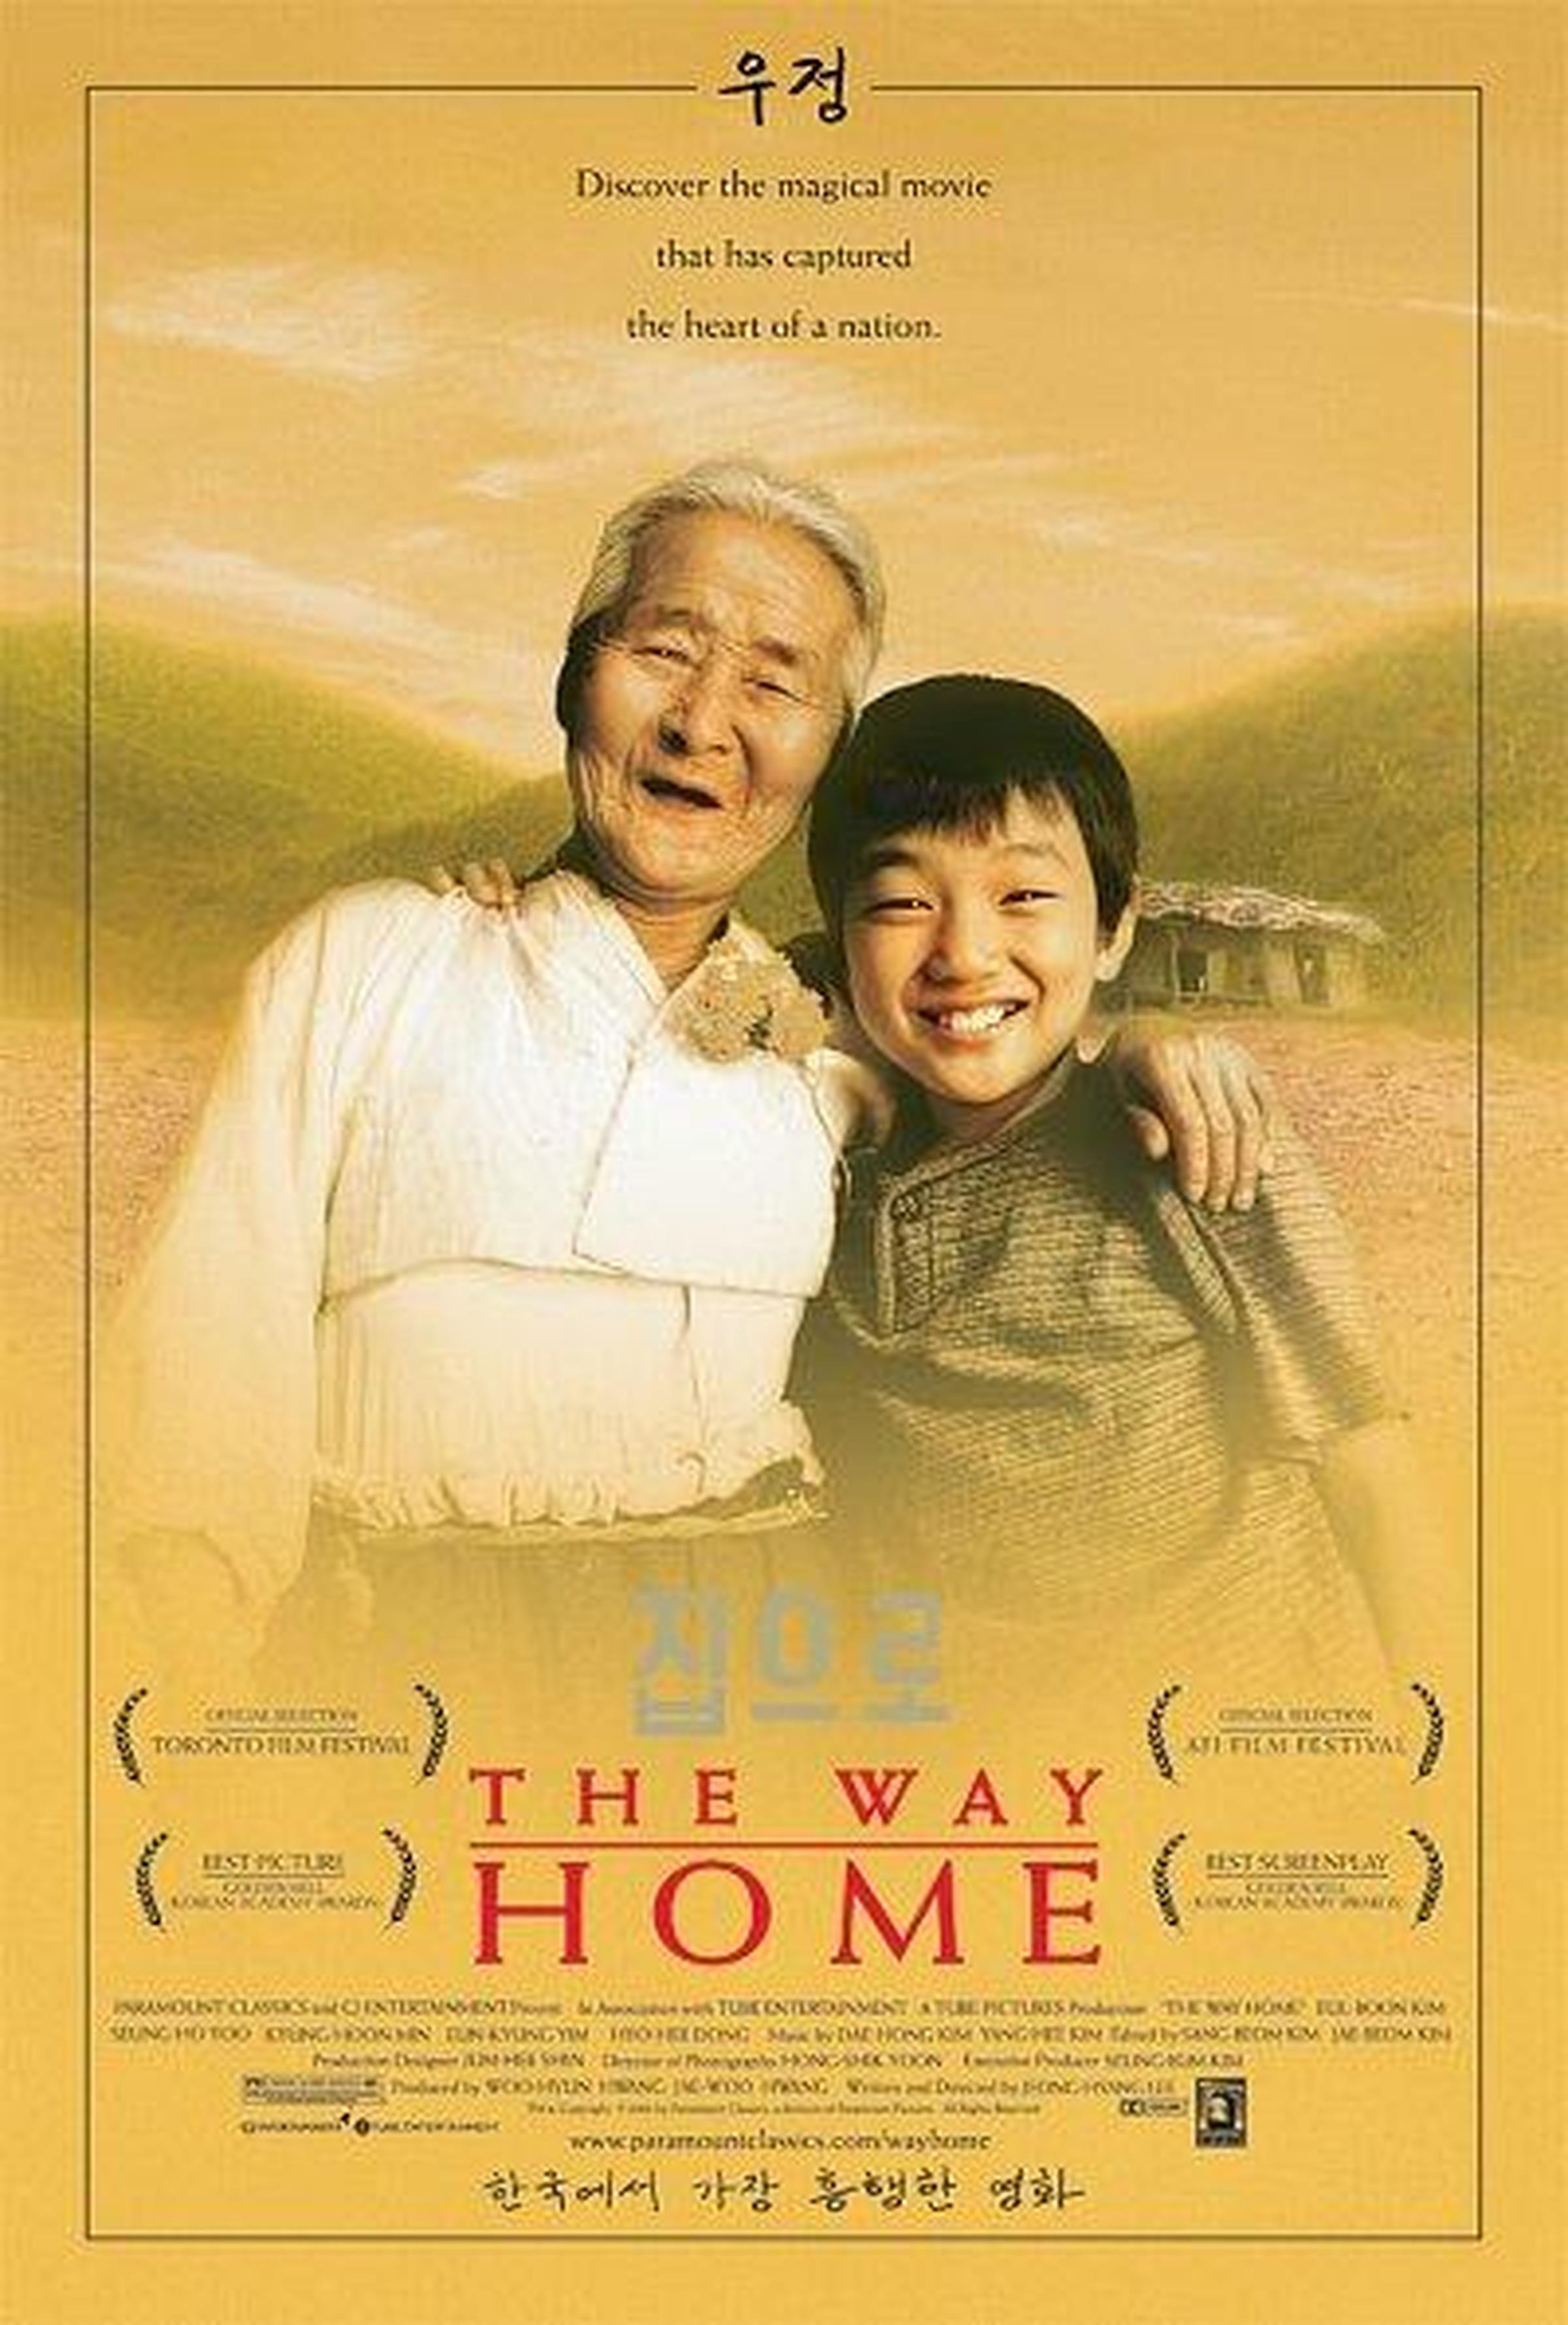 【2000-2010】《爱·回家》 (2002)导演李廷香。真实动人，没有煽情。